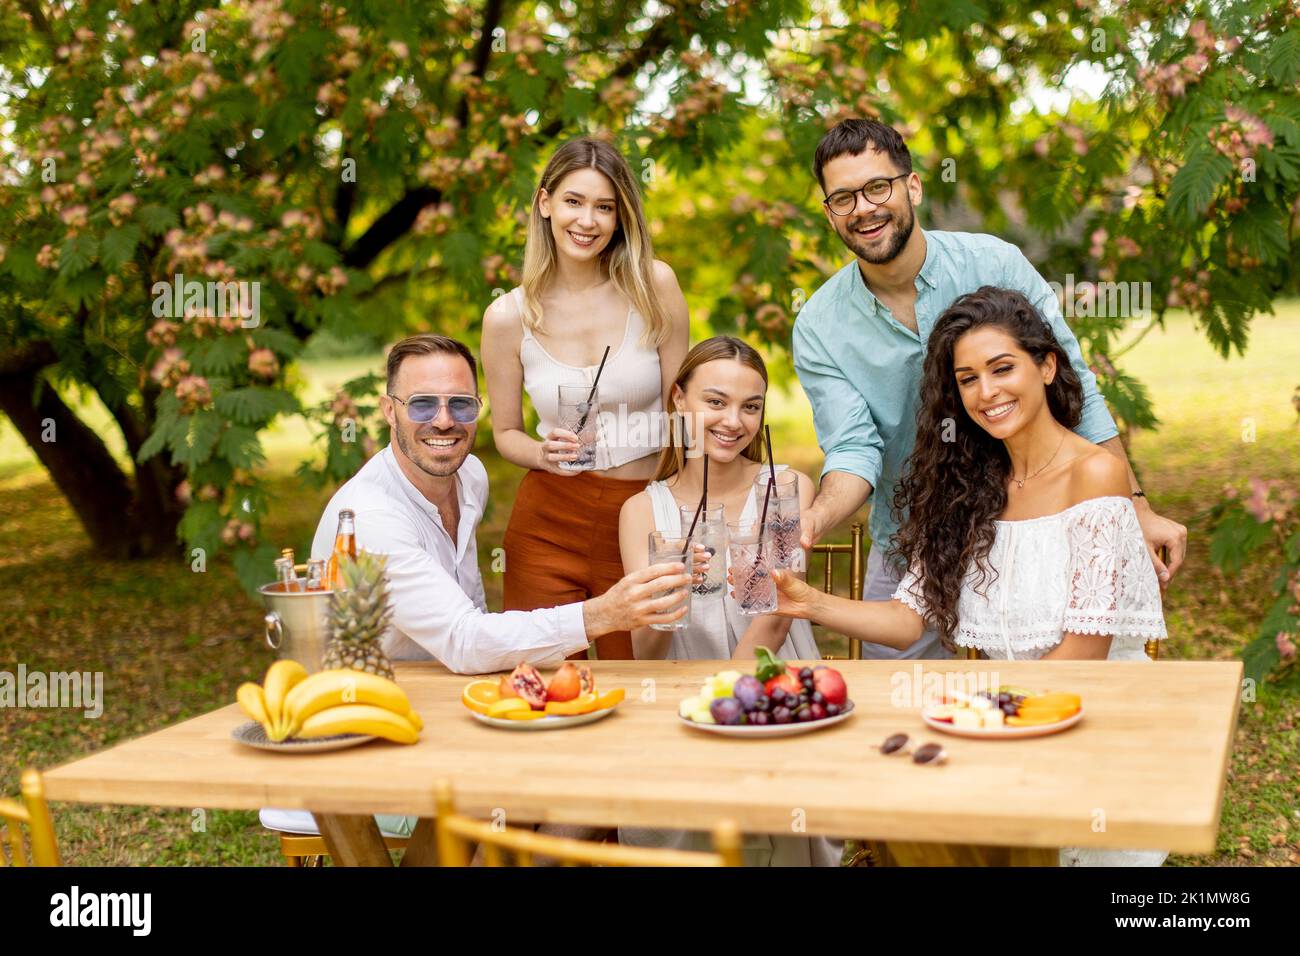 Grupo de jóvenes alegrando con limonada fresca y comiendo frutas en el jardín Foto de stock